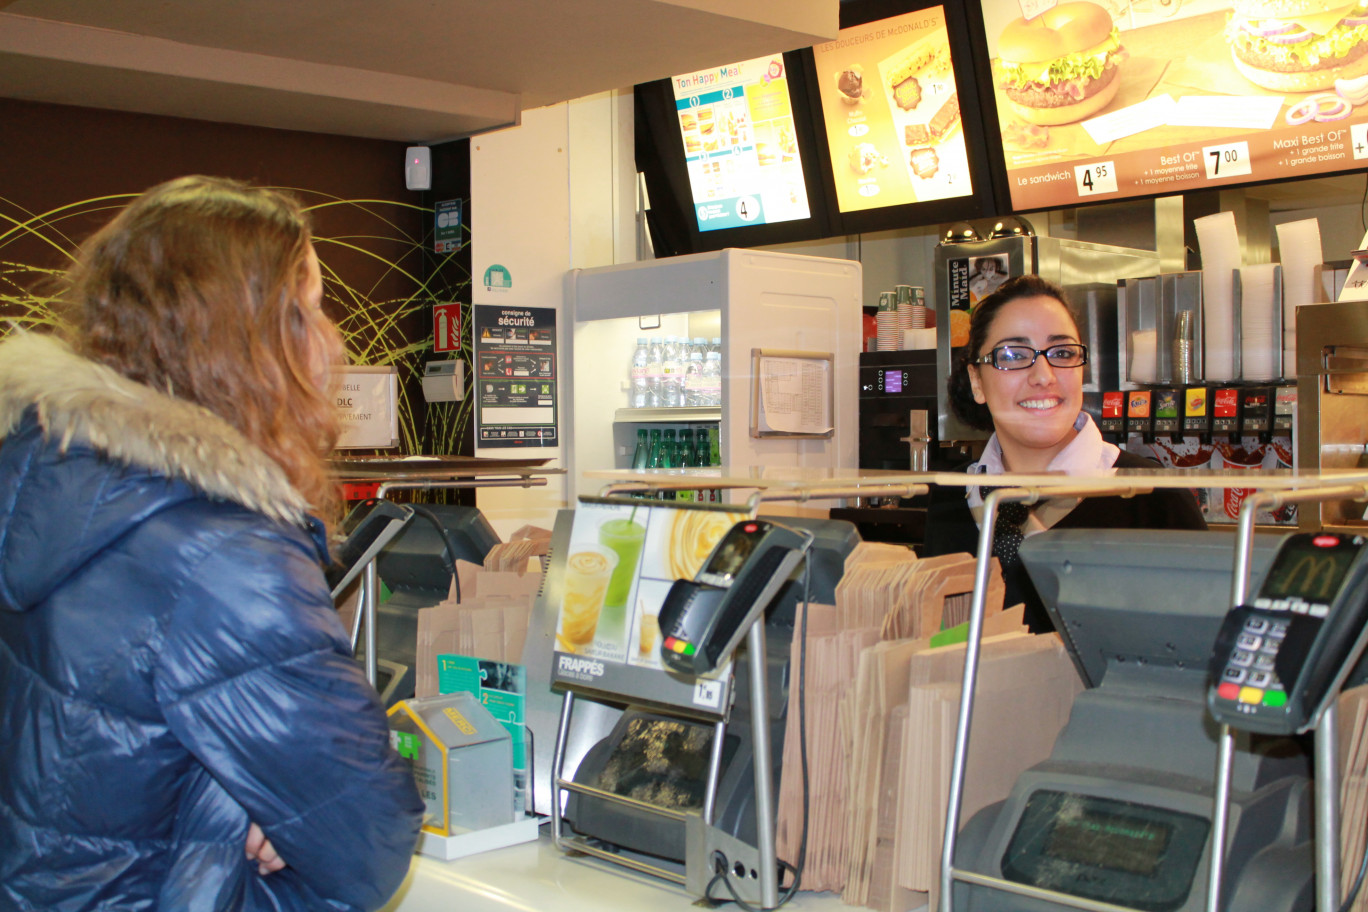 2750 personnes seront recrutées dans les différents McDonald's de la région en 2013.